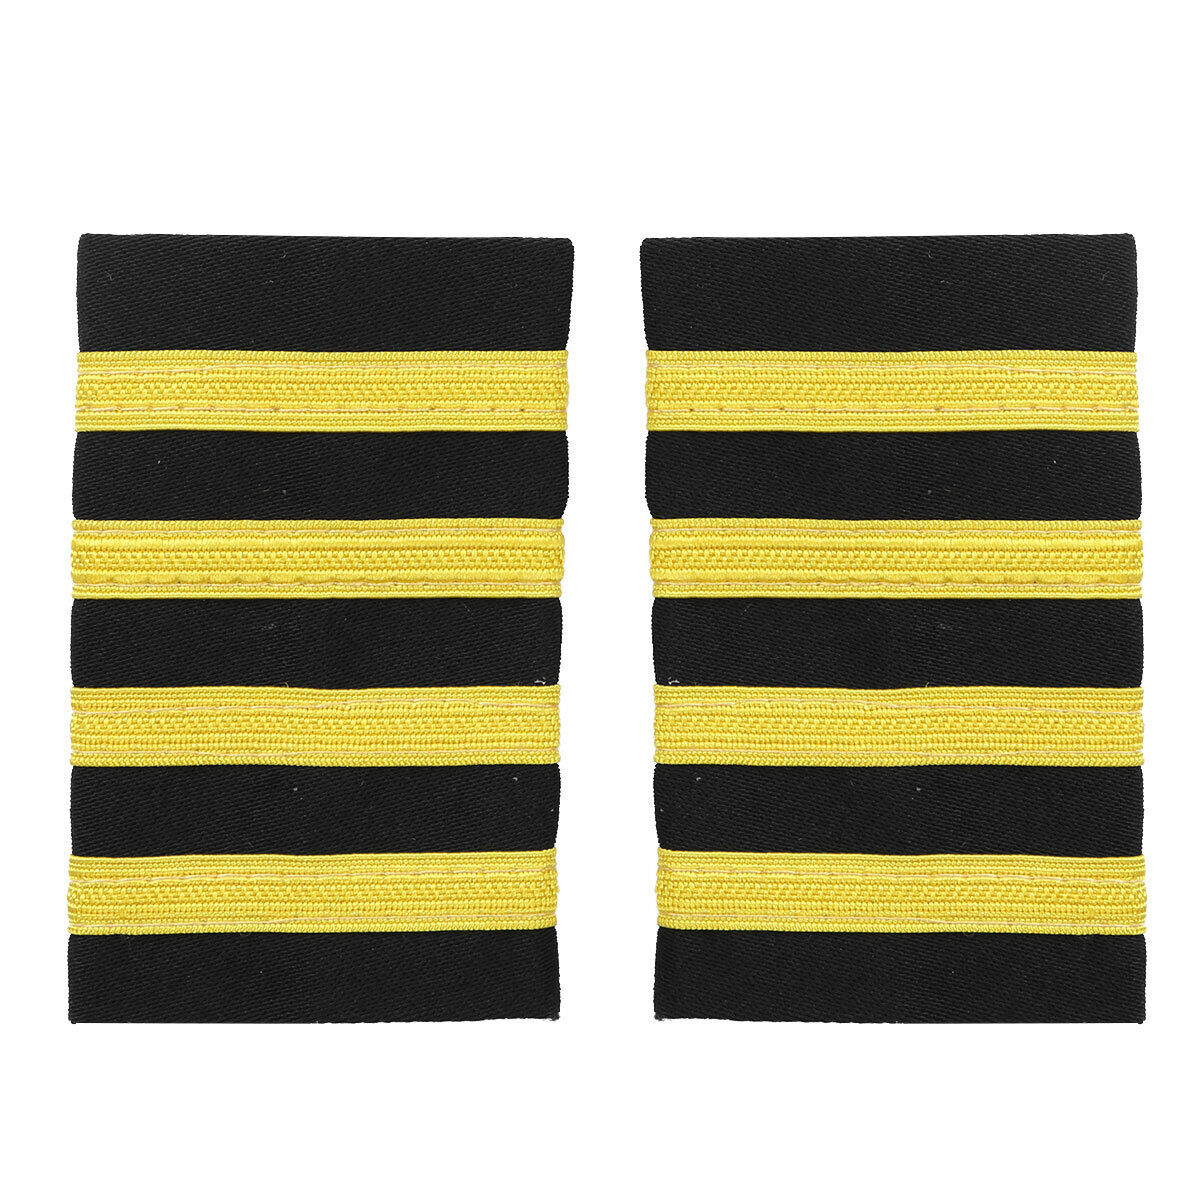 1 Pair Four Bar Airline Pilot Uniform Epaulets Captain Stripe Shoulder Board New